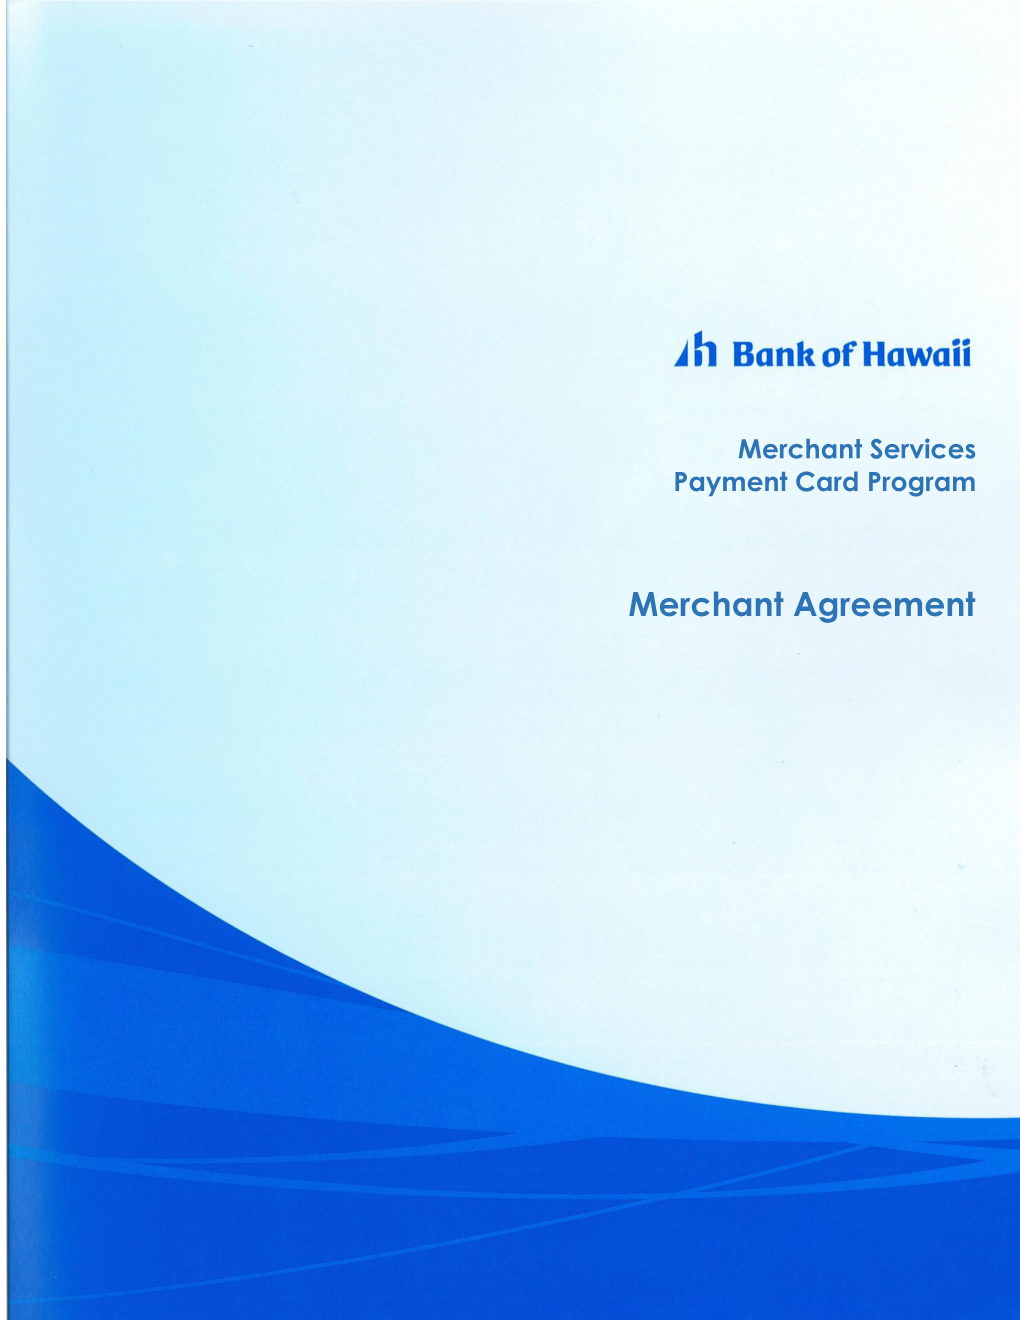 Merchant Services Payment Card Program